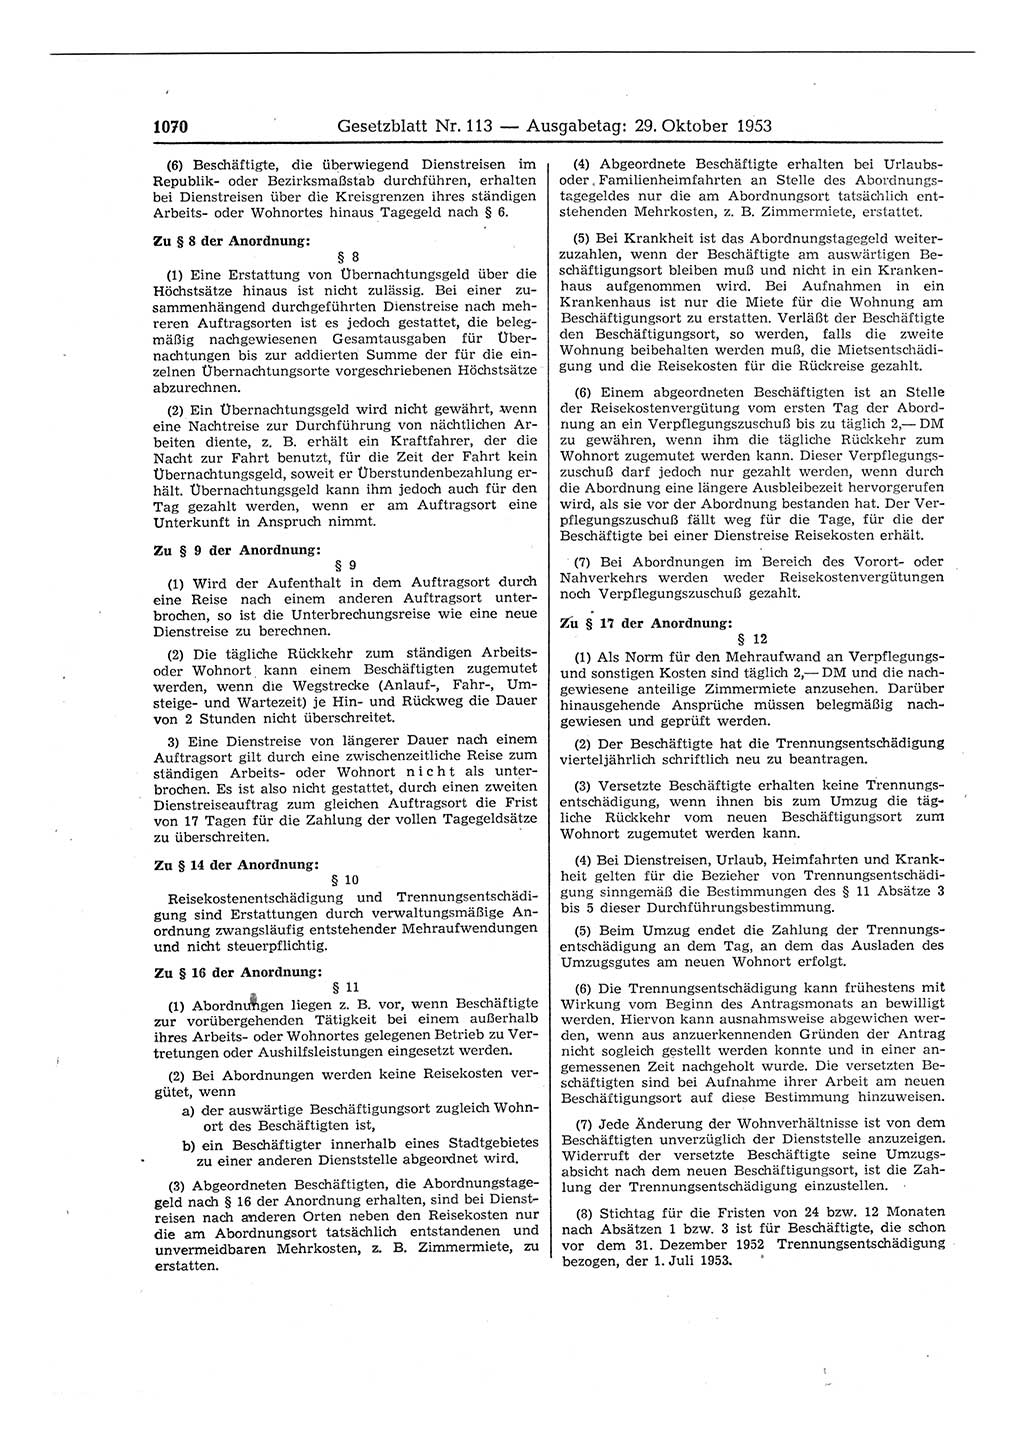 Gesetzblatt (GBl.) der Deutschen Demokratischen Republik (DDR) 1953, Seite 1070 (GBl. DDR 1953, S. 1070)